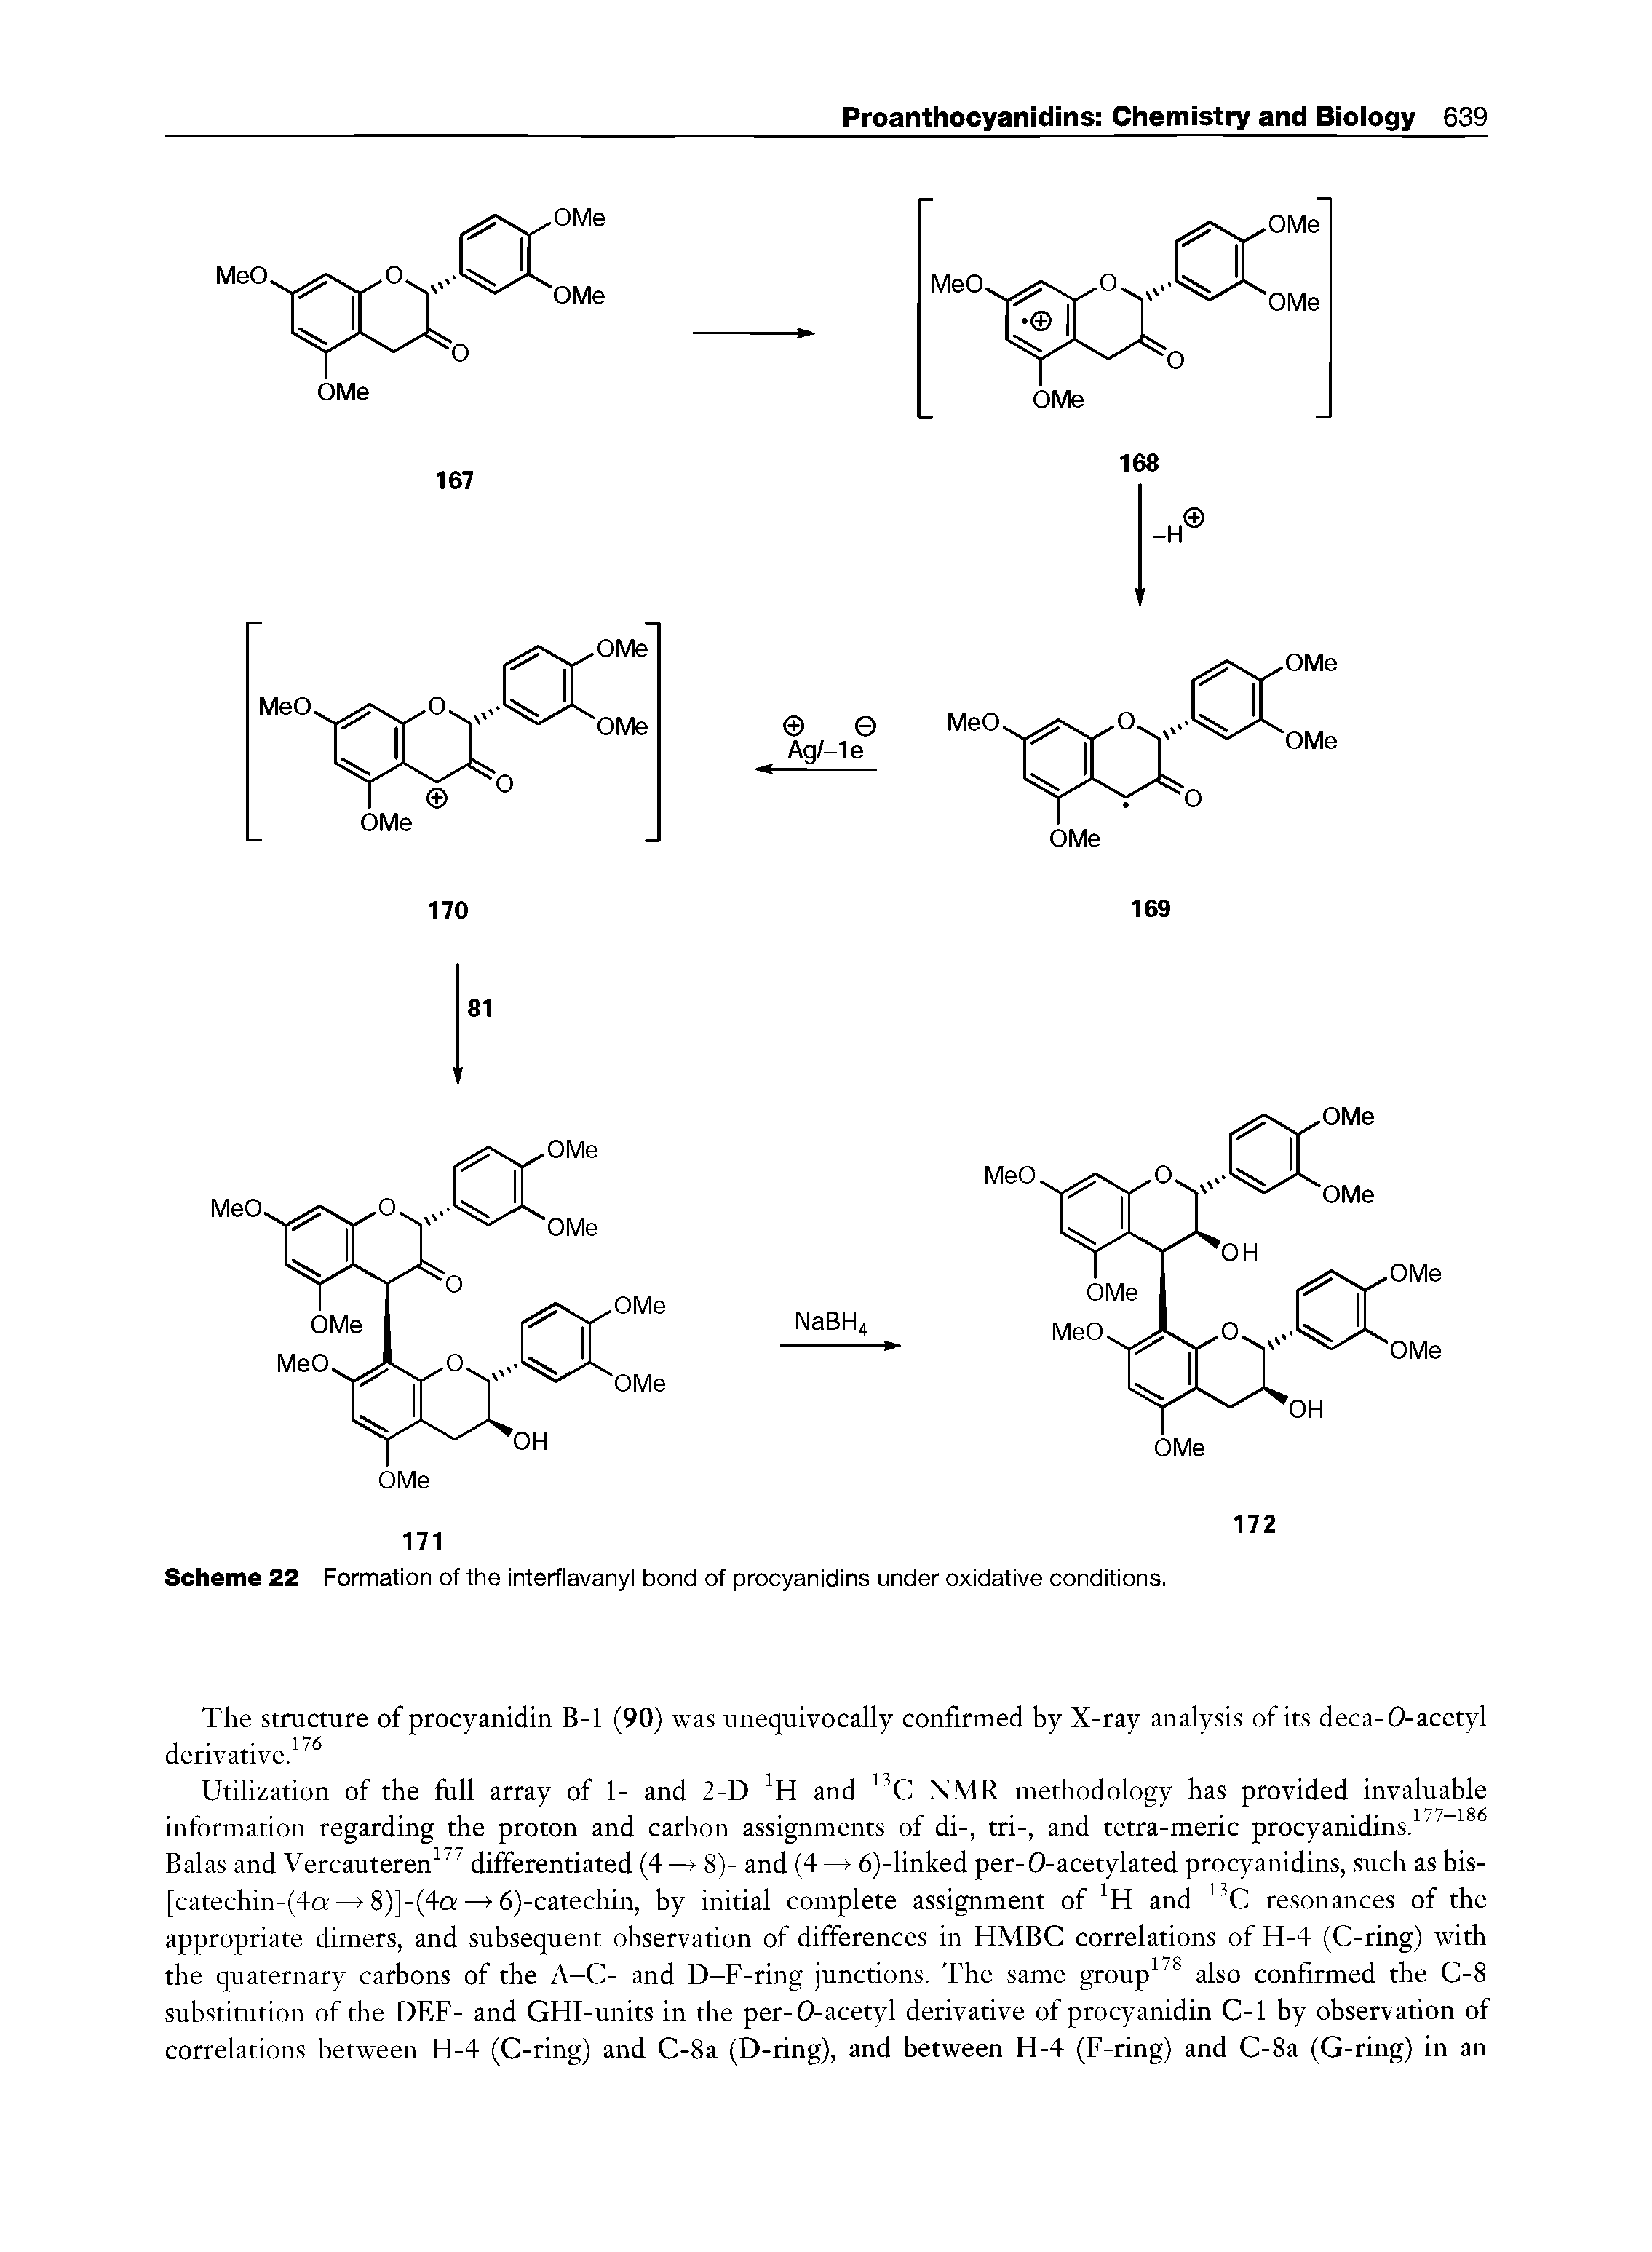 Scheme 22 Formation of the interflavanyl bond of procyanidins under oxidative conditions.